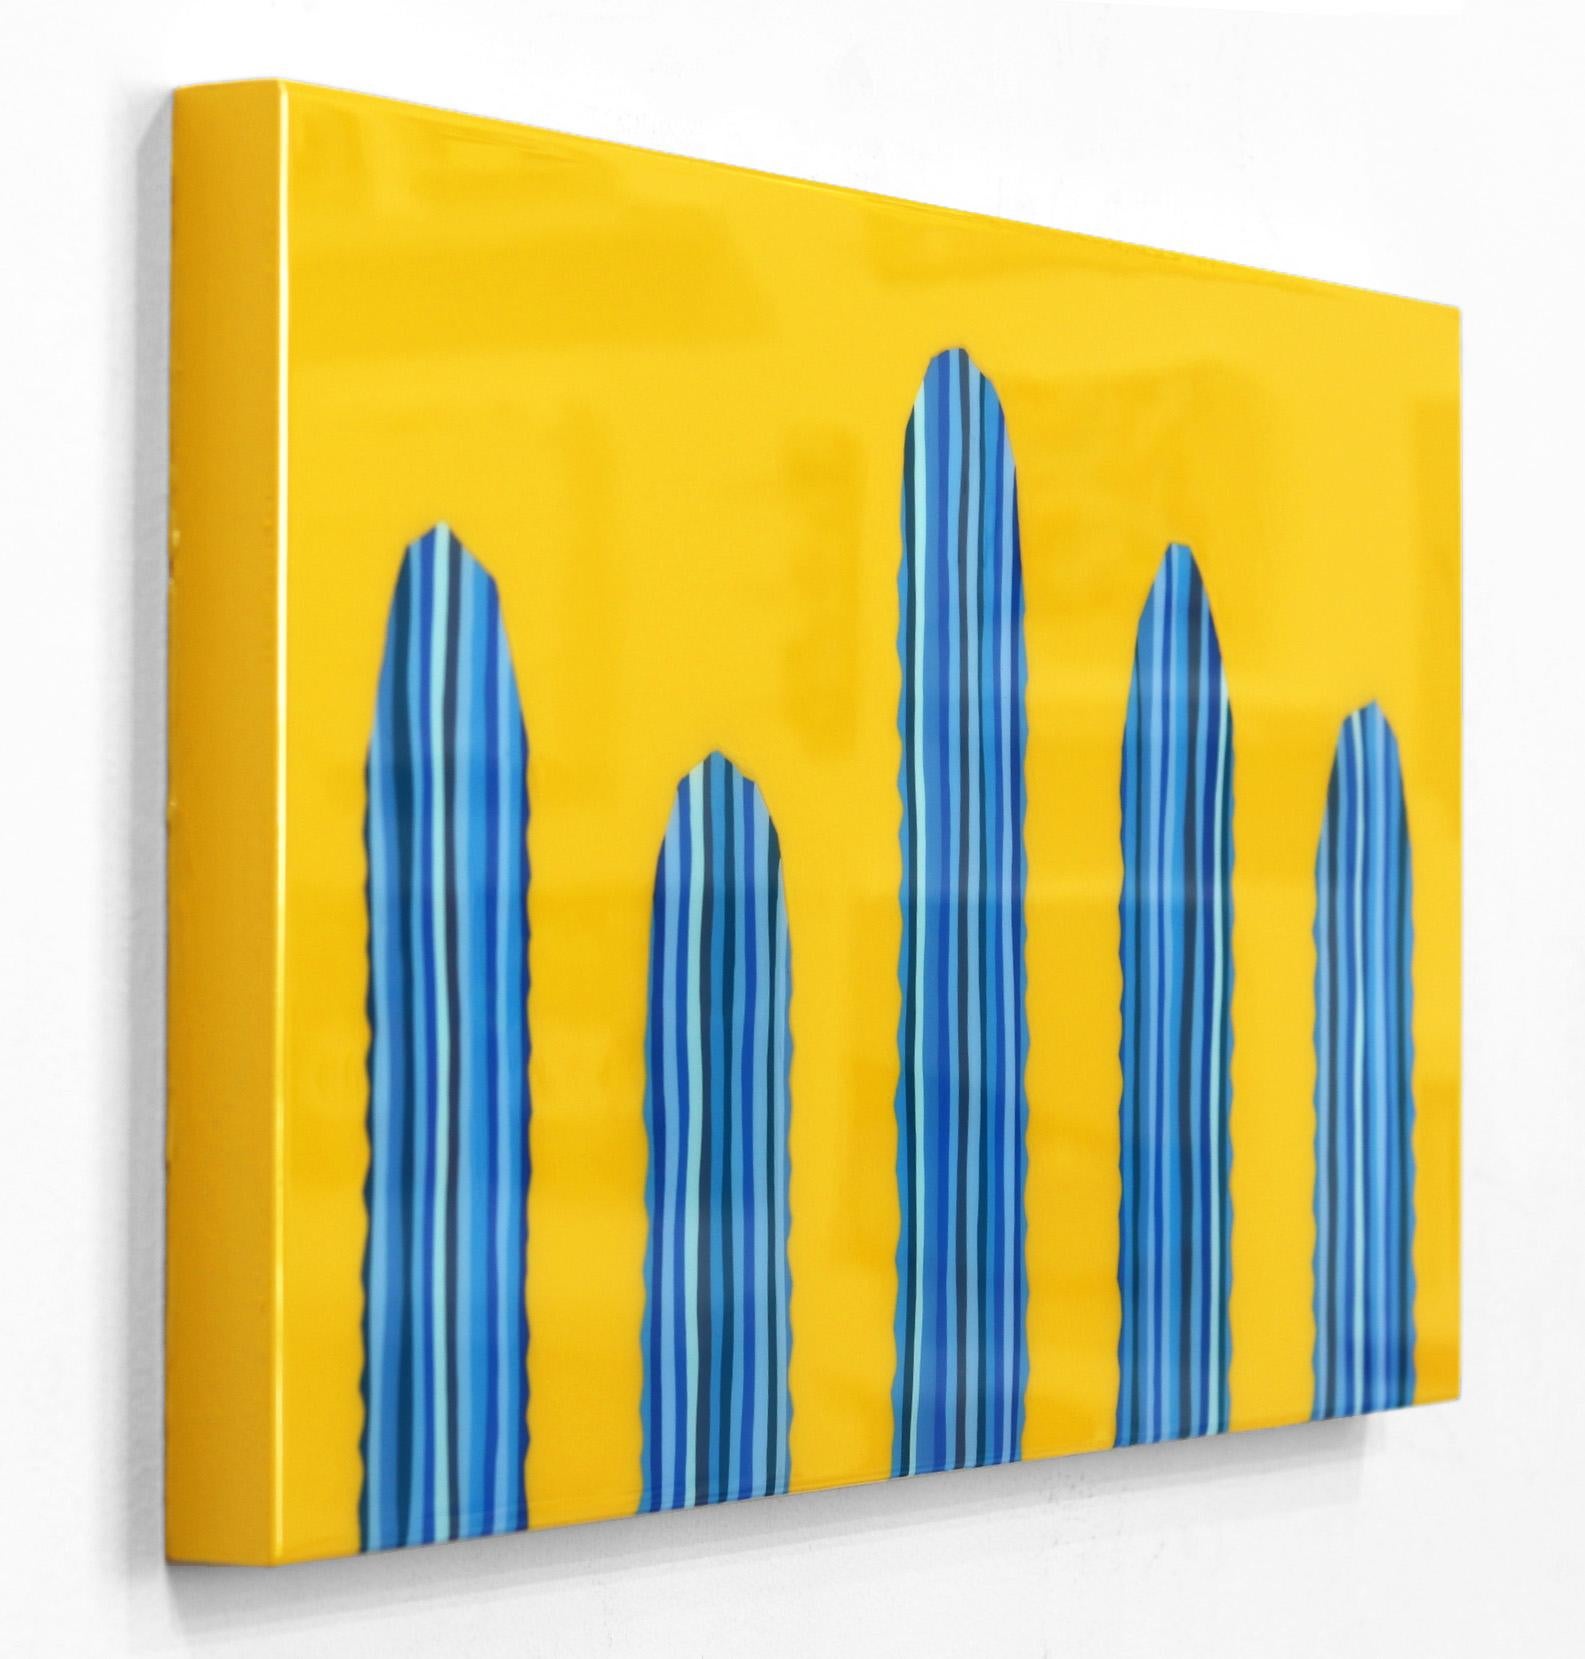 Mañana Amarilla- Peinture pop art de cactus d'un jaune bleu vibrant inspirée du sud-ouest - Orange Abstract Painting par Will Beger